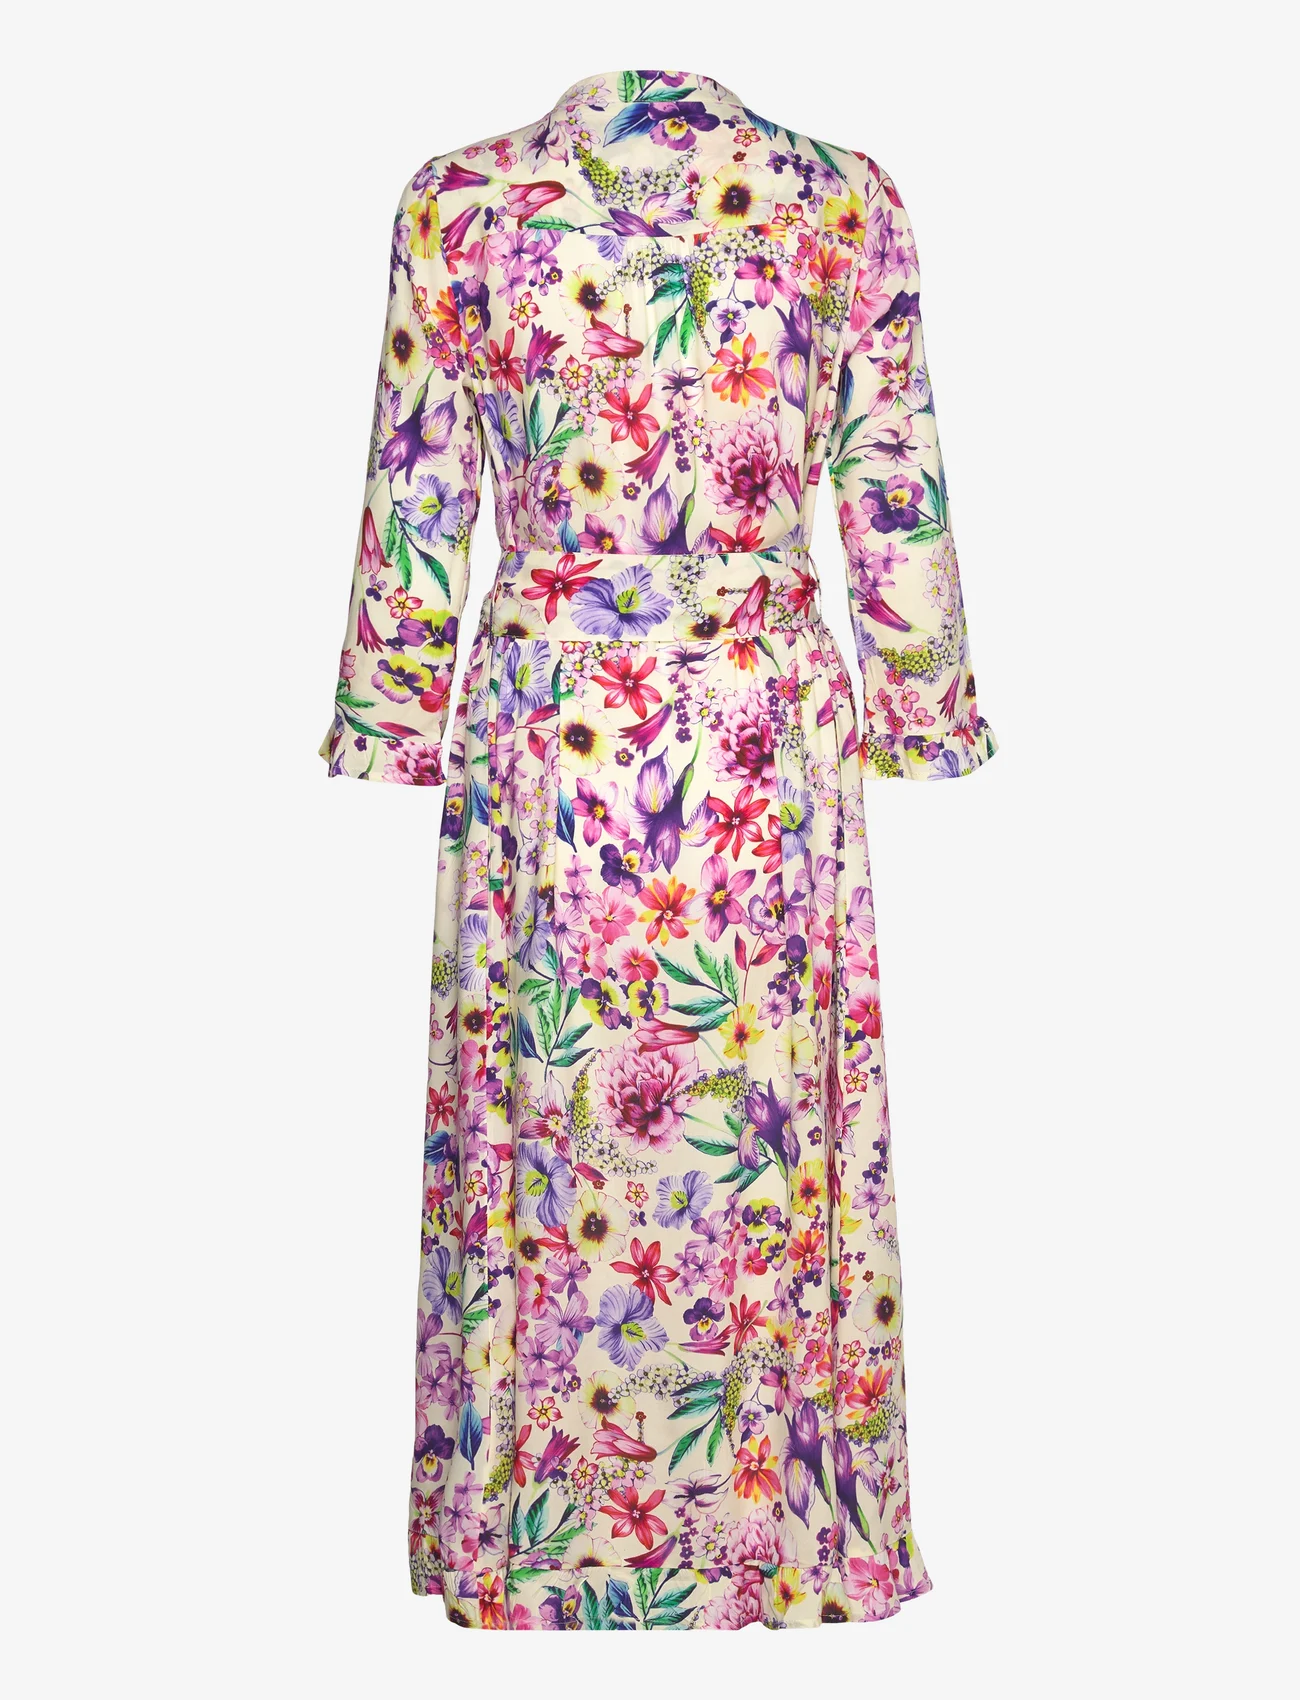 Lollys Laundry - Harper Dress - odzież imprezowa w cenach outletowych - 74 flower print - 1